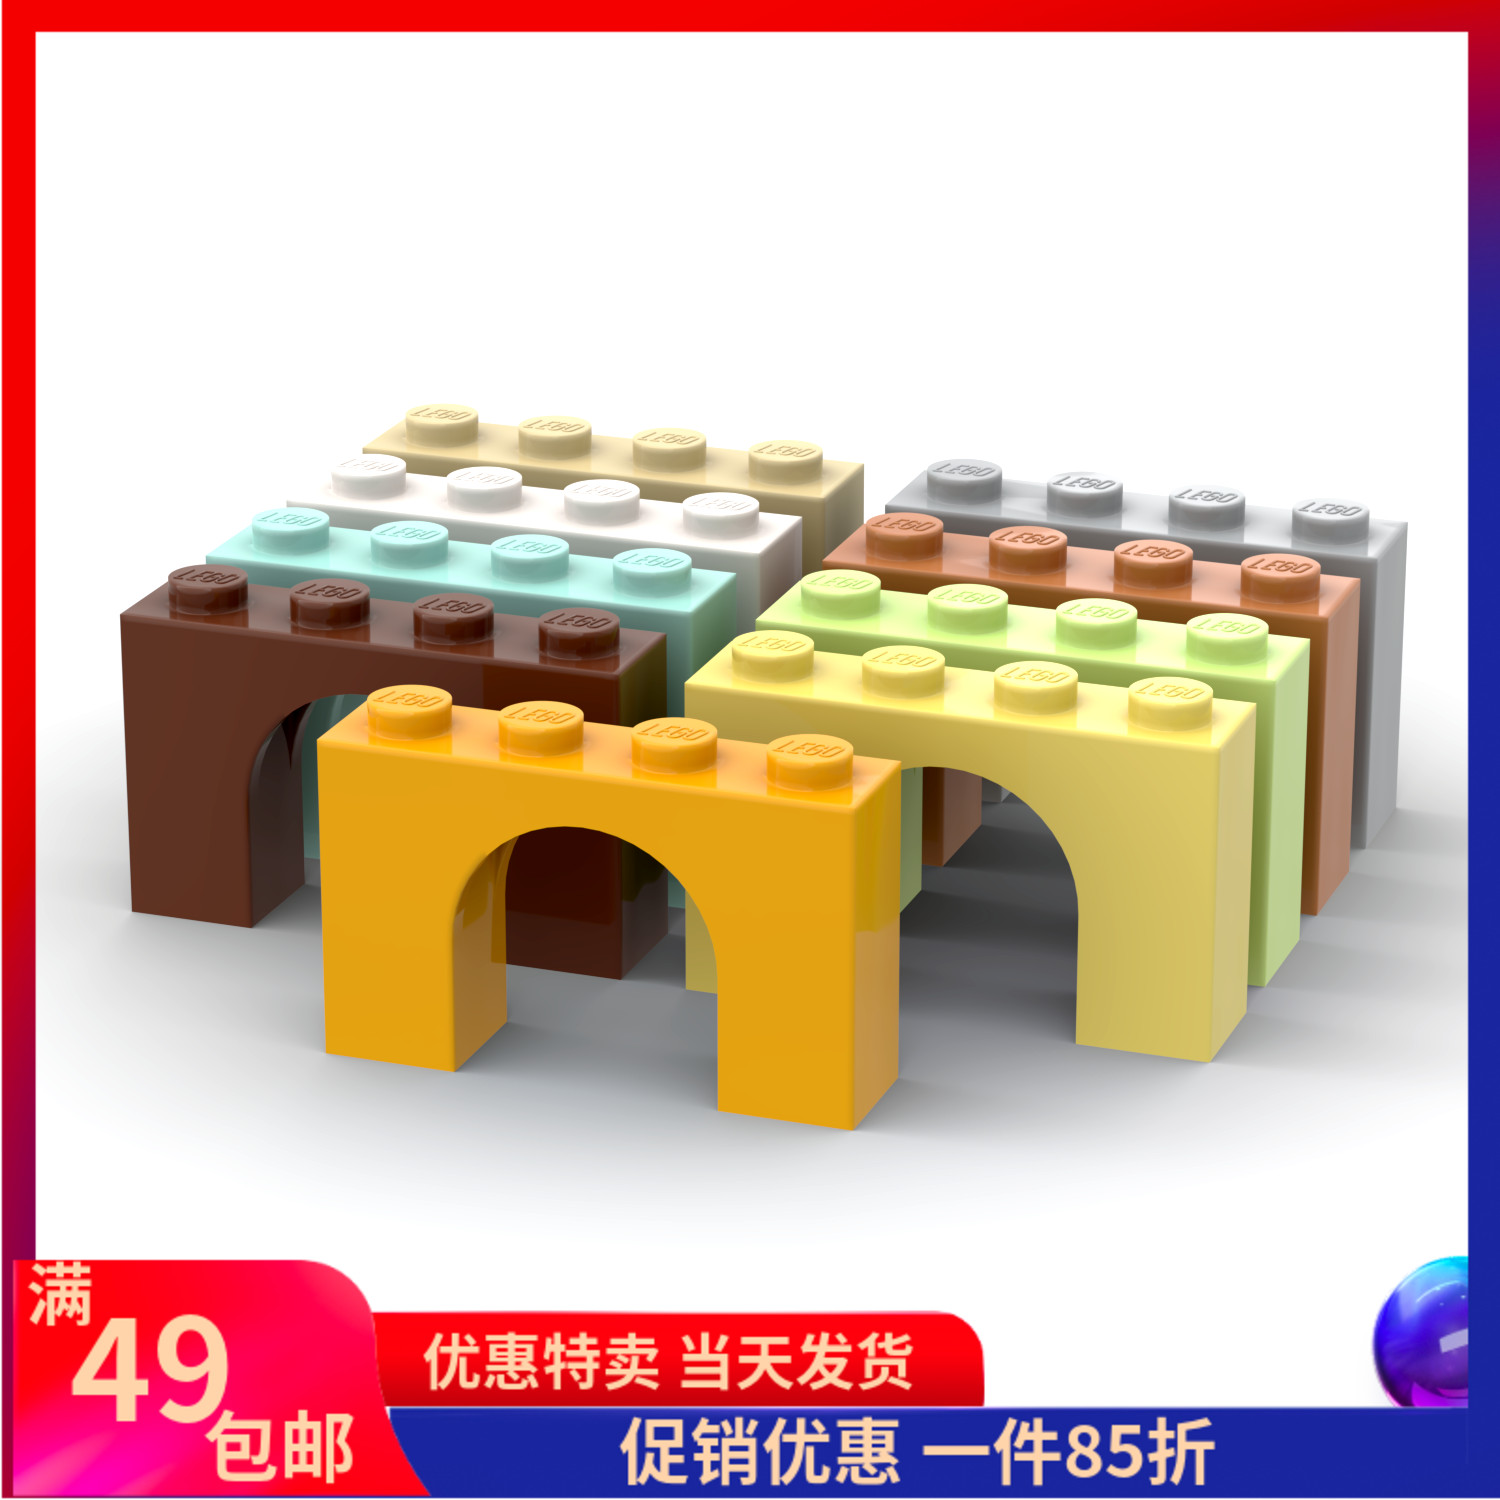 LEGO乐高 6182 1x4x2 拱形砖 浅灰6031056 米6031057 白中肉 黄绿